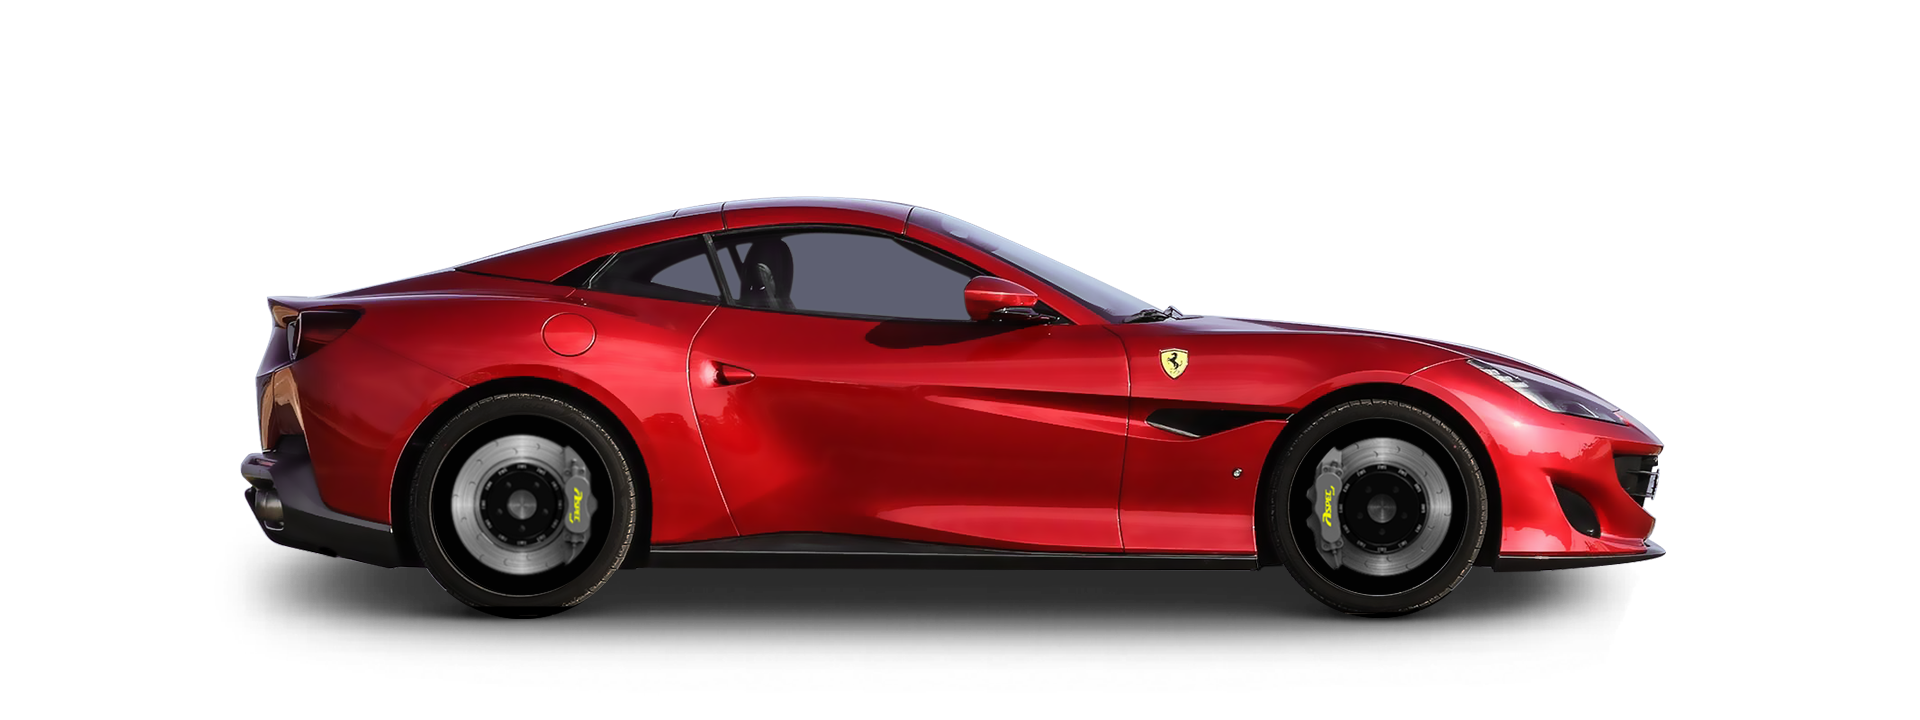 法拉利Ferrari Portofino MF66